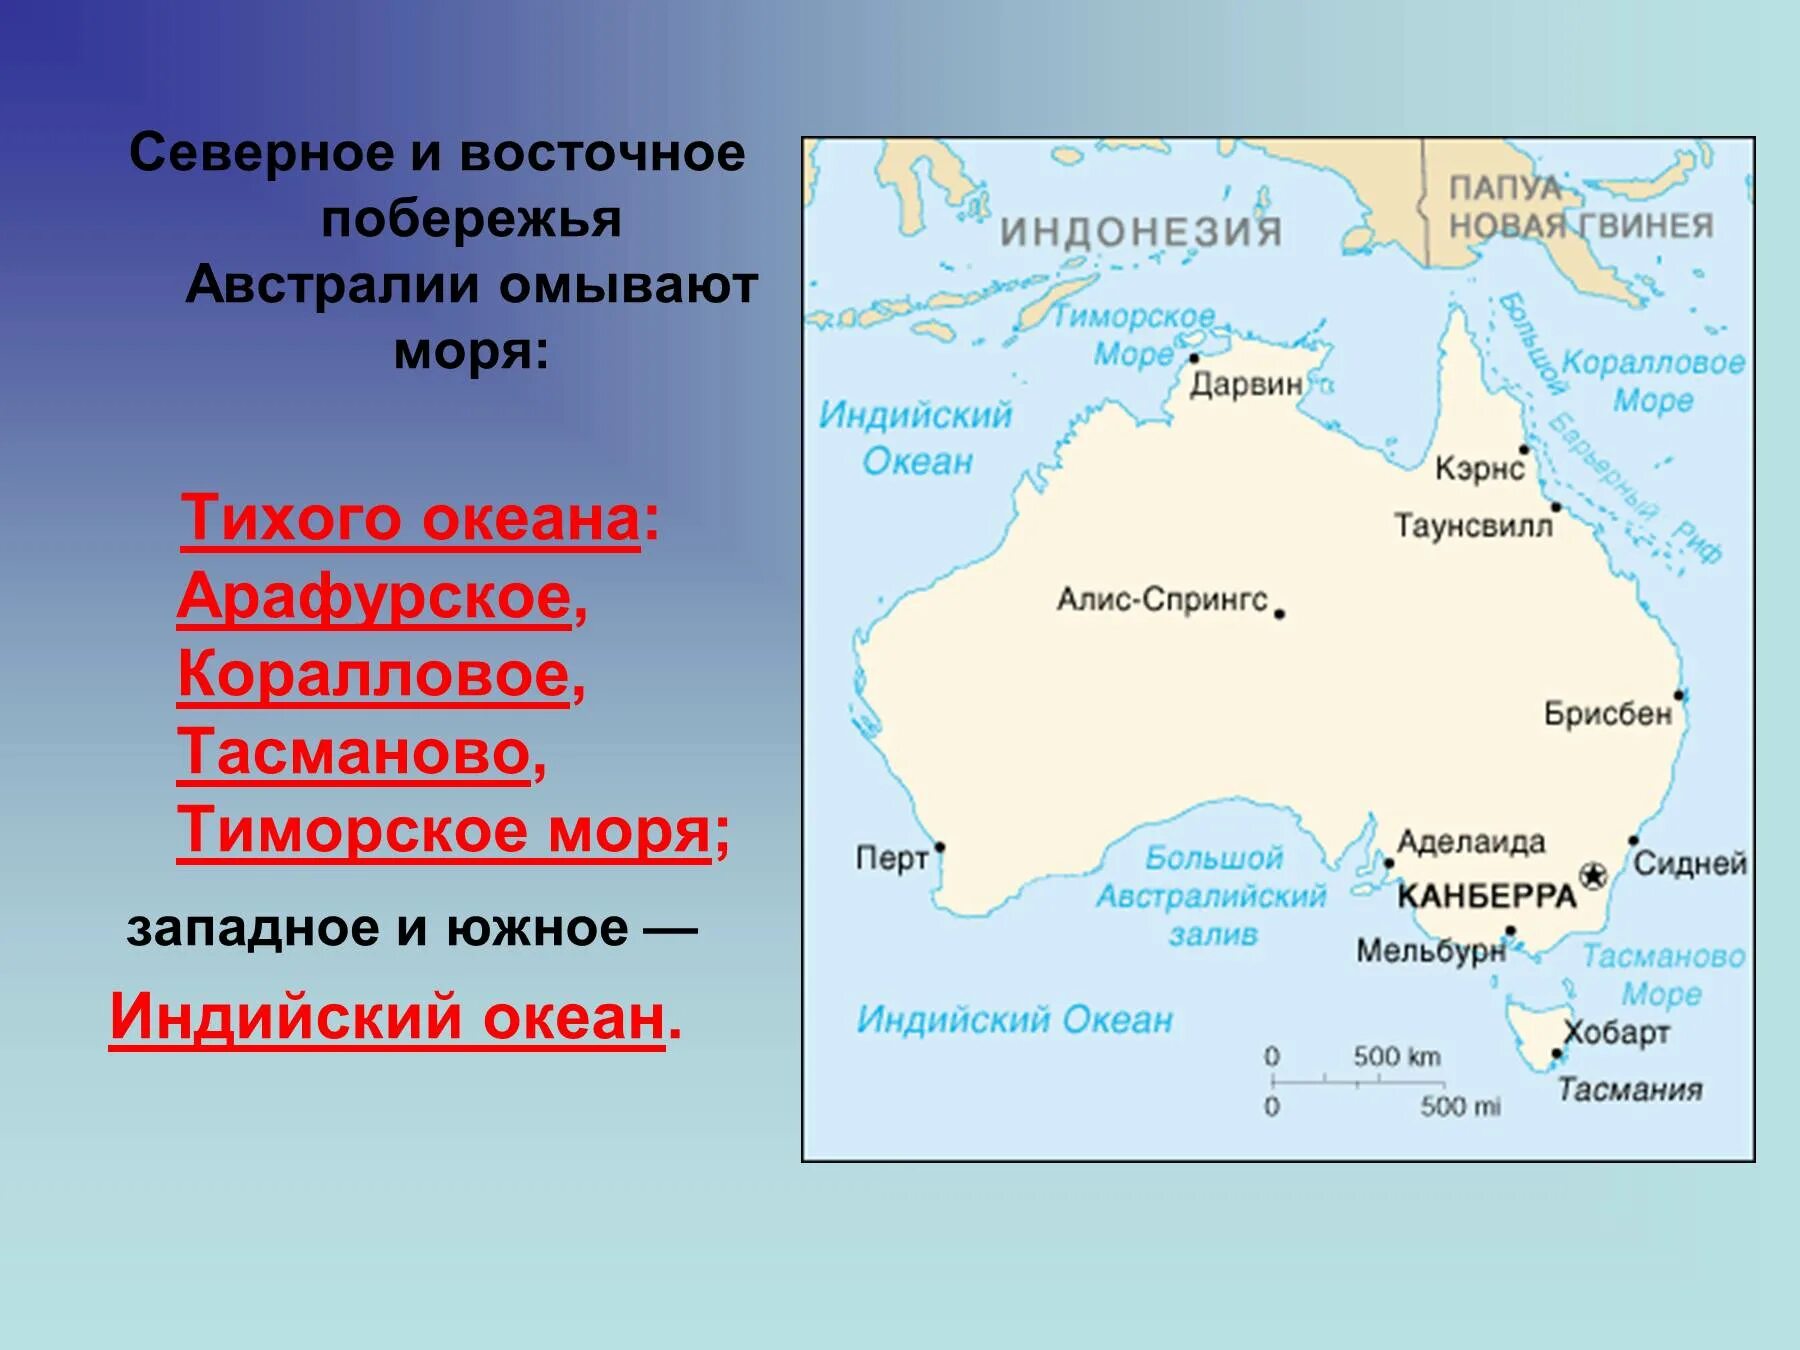 Моря: тасманово, Тиморское, коралловое, Арафурское.. Тасманово море на карте Австралии. Австралия моря тасманово коралловое и Арафурское. Австралия моря и океаны омывающие материк. Как называется остров принадлежит австралии